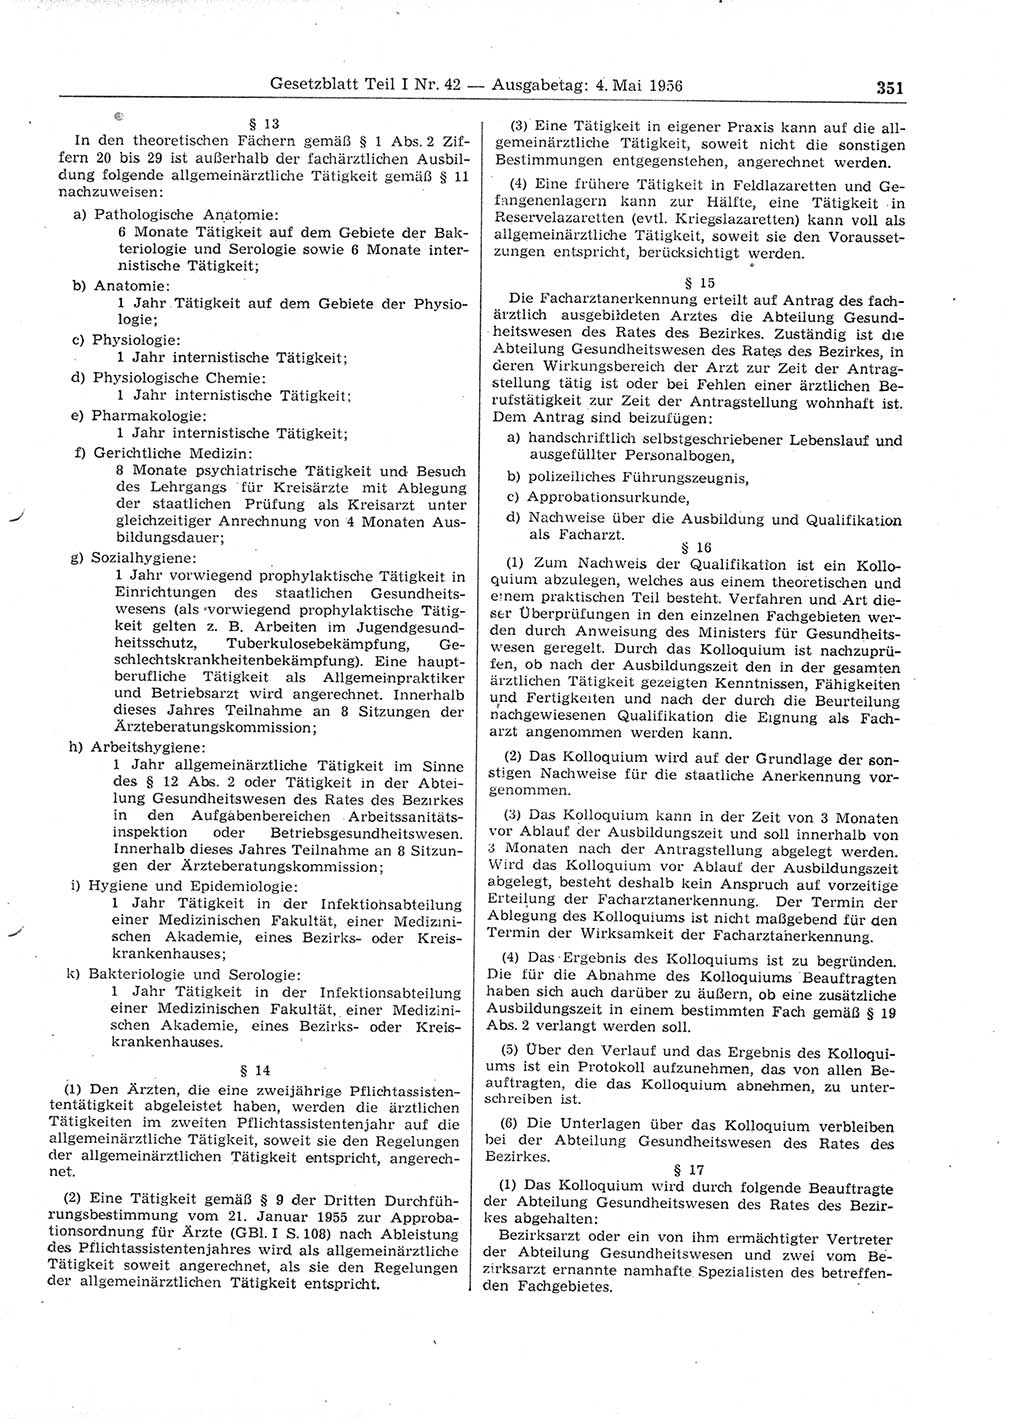 Gesetzblatt (GBl.) der Deutschen Demokratischen Republik (DDR) Teil Ⅰ 1956, Seite 351 (GBl. DDR Ⅰ 1956, S. 351)